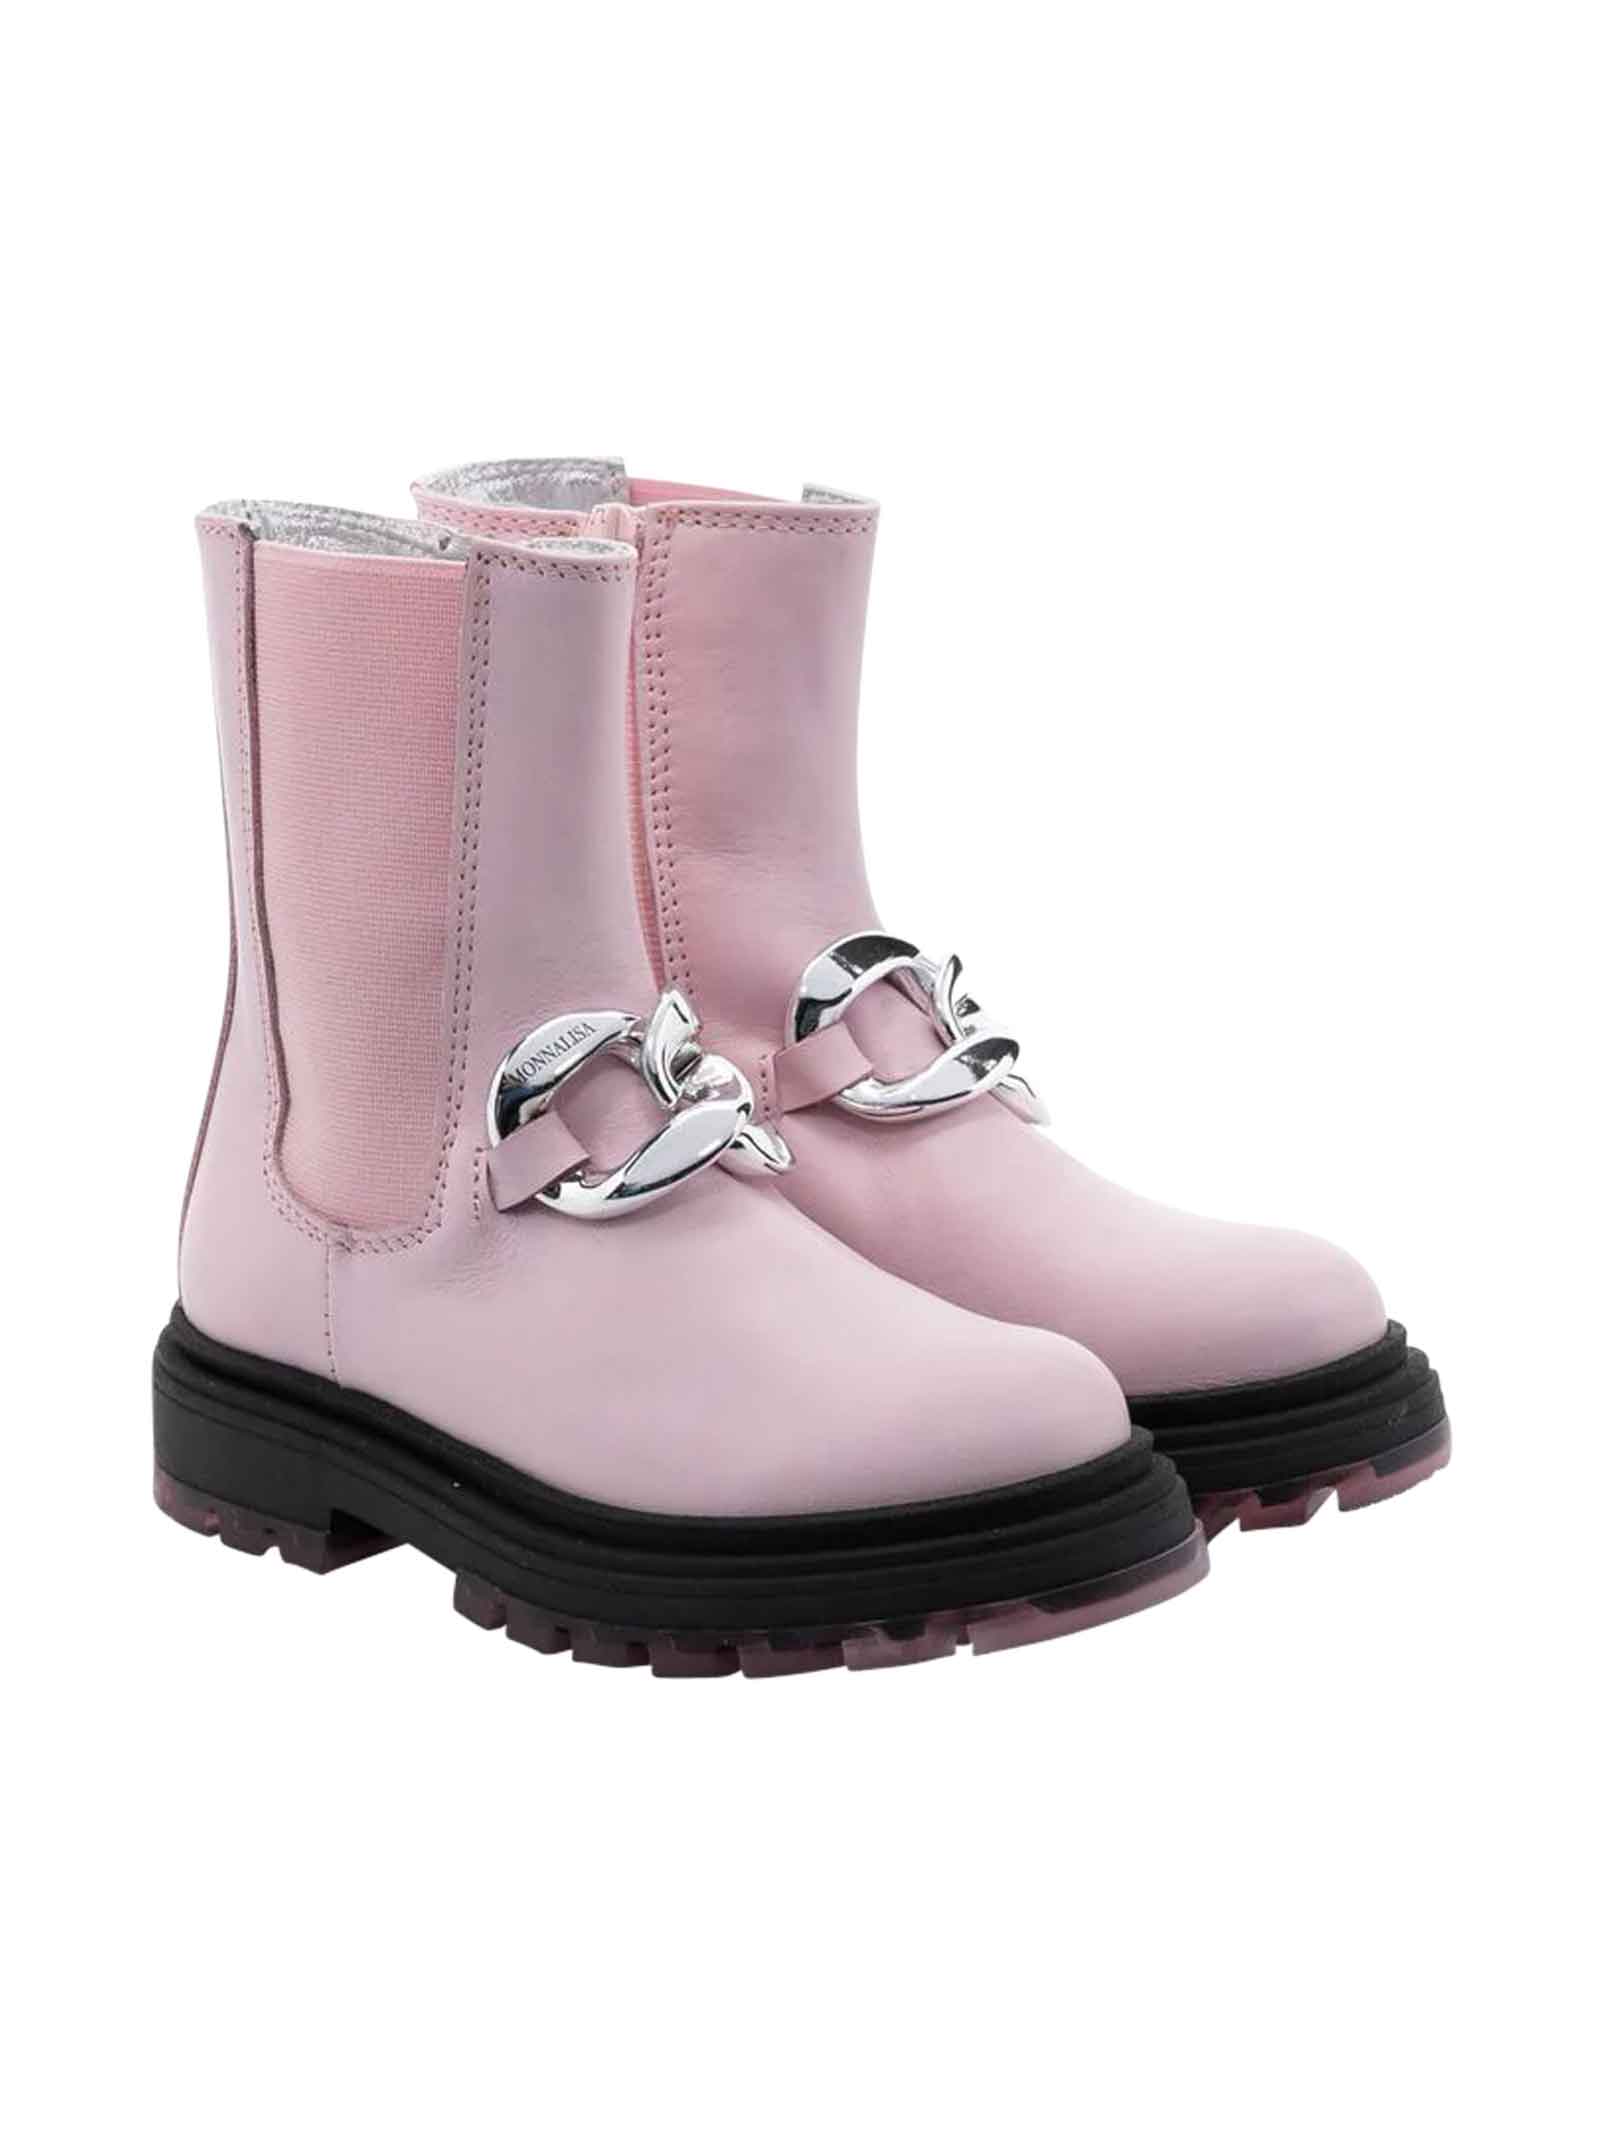 Pink Boots Girl Monnalisa.